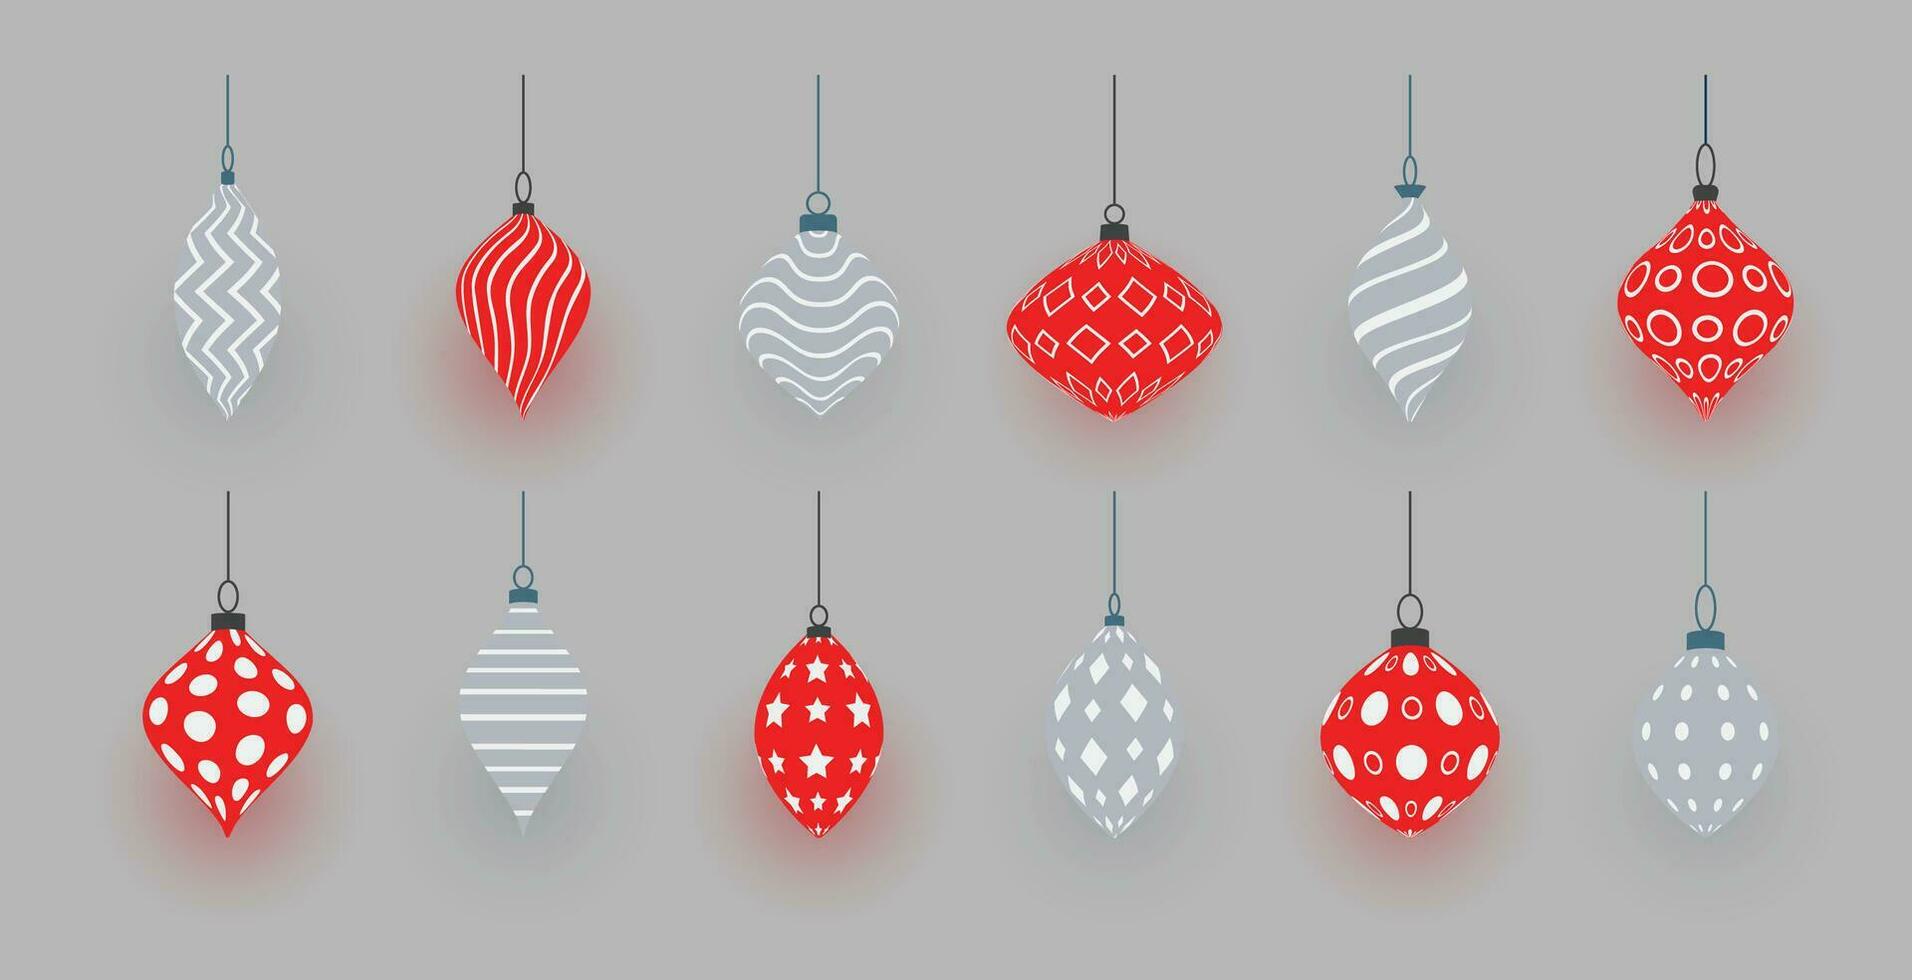 färgrik skinande lysande jul bollar. xmas glas boll. Semester dekoration mall. vektor illustration.